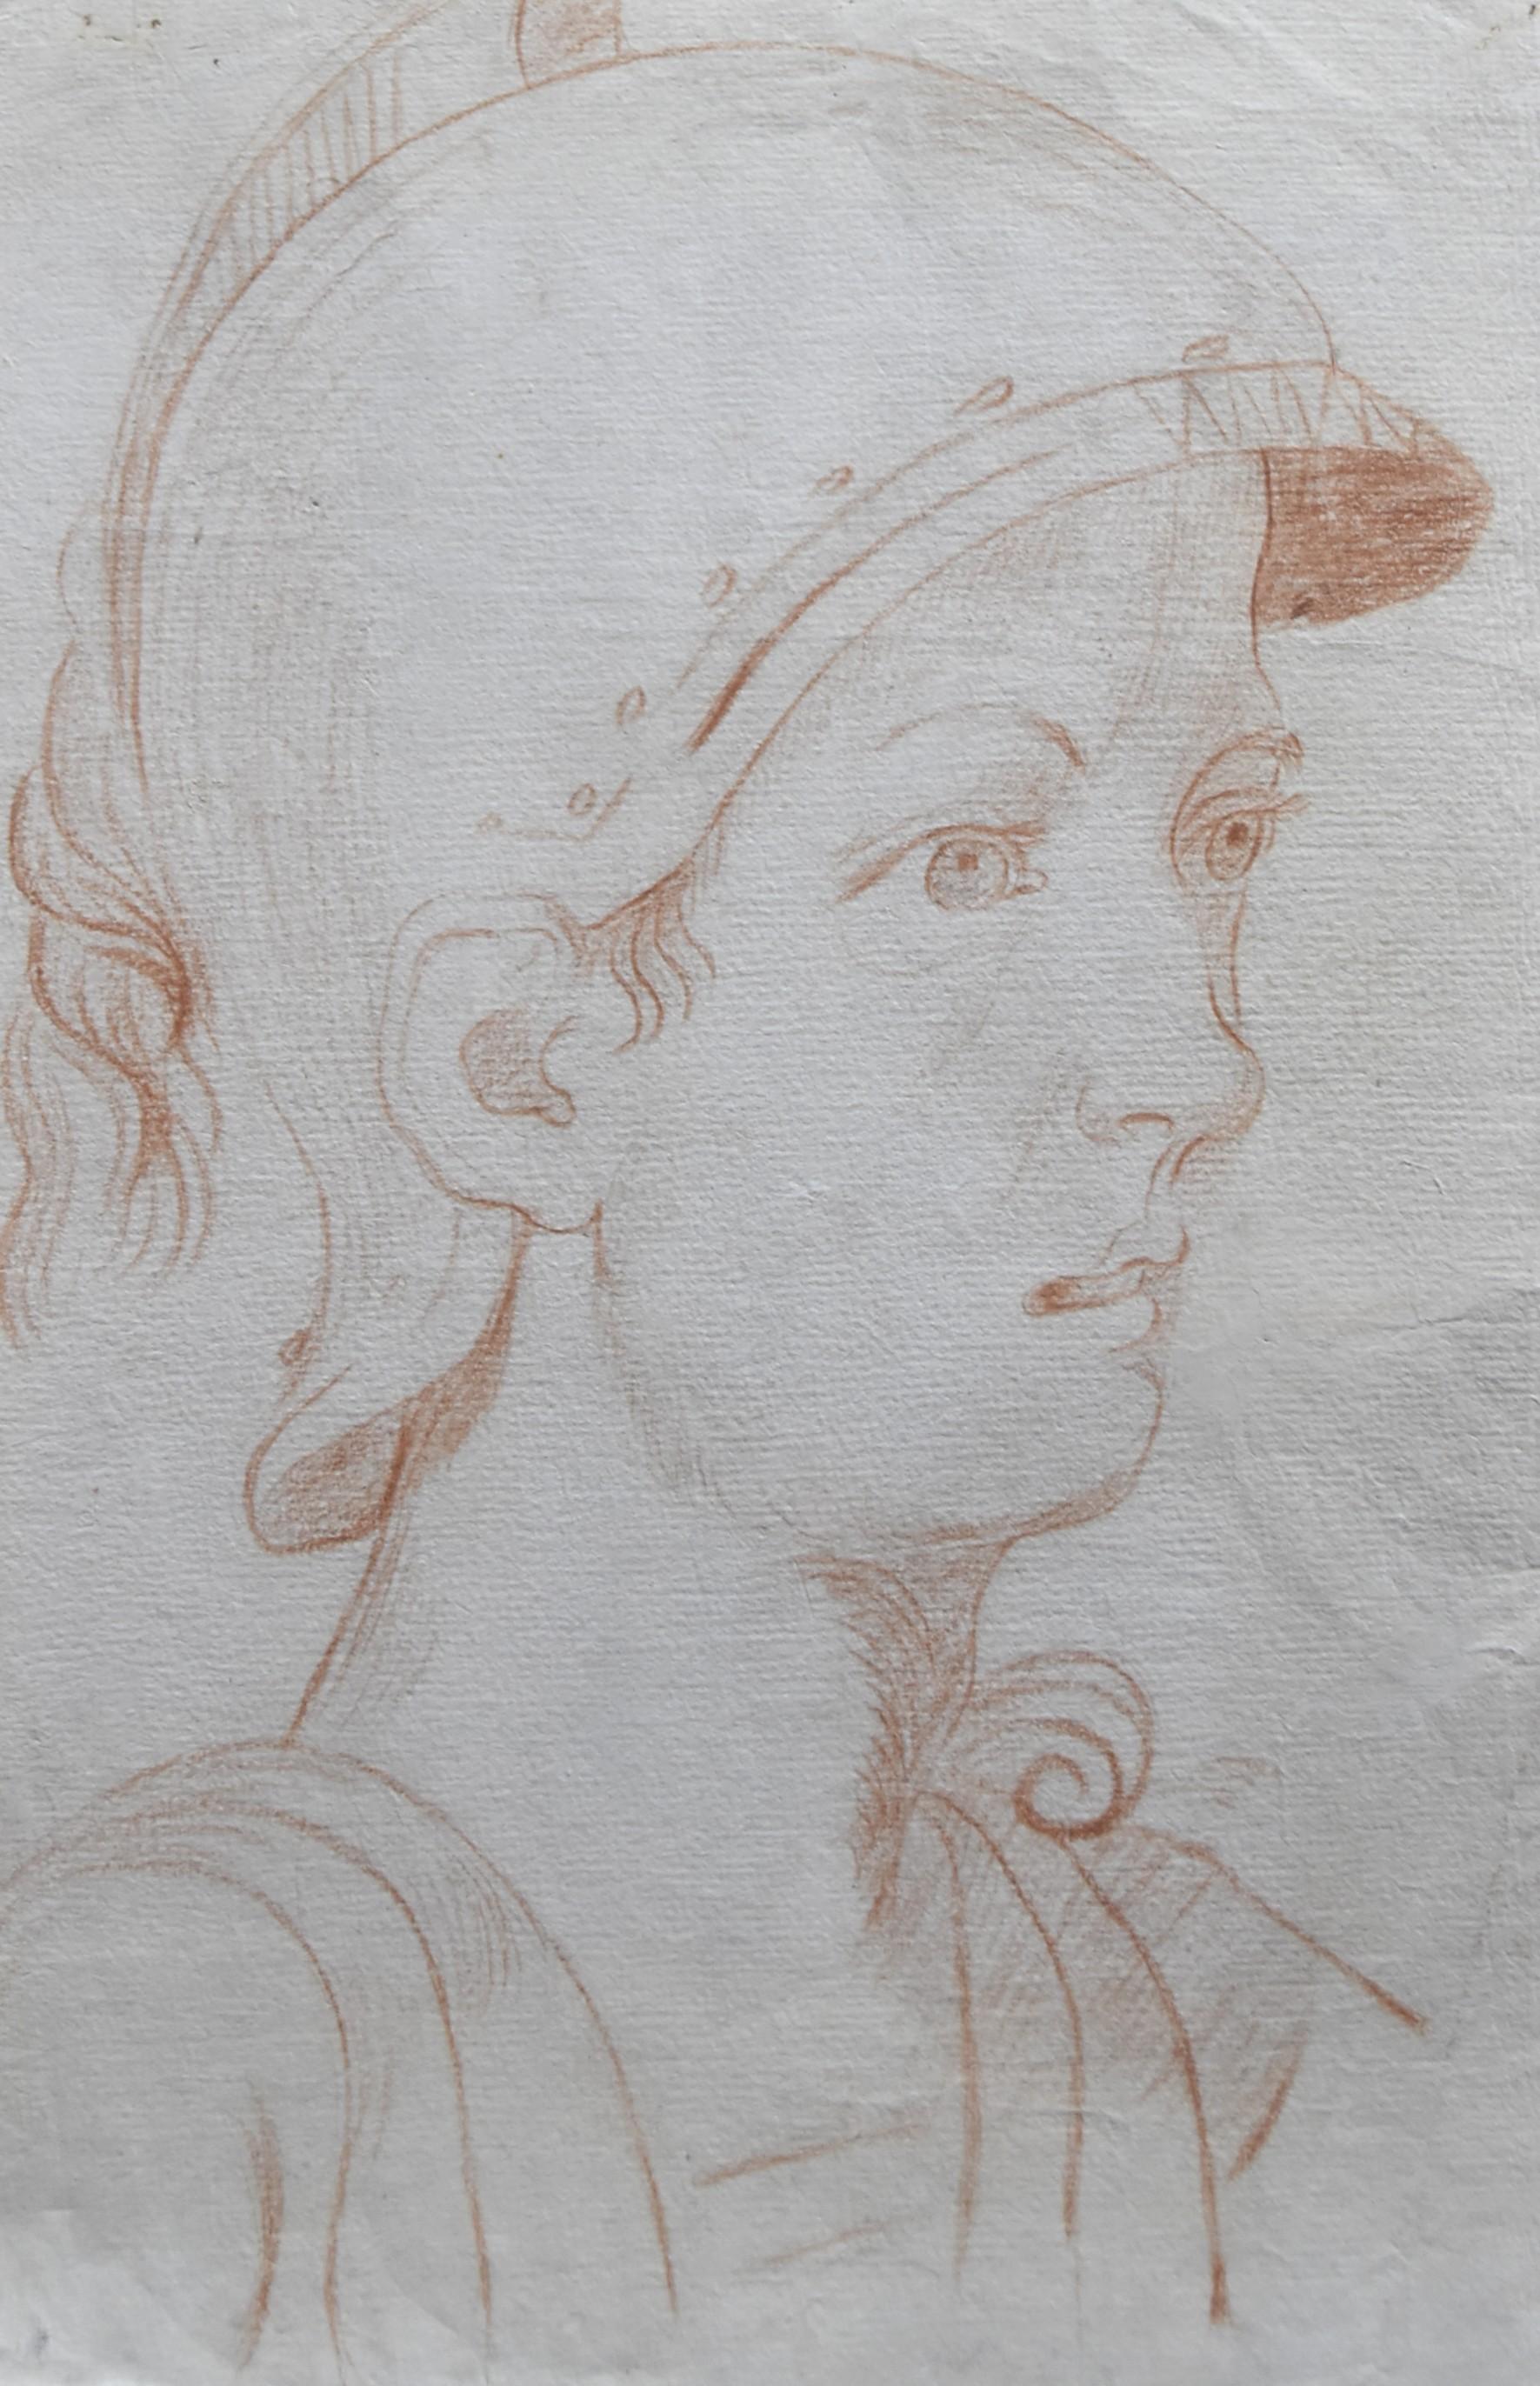 Unknown Figurative Art – Italienische Schule des 18. Jahrhunderts,  Ein antiker Soldat im Profil, rote Kreide auf Papier